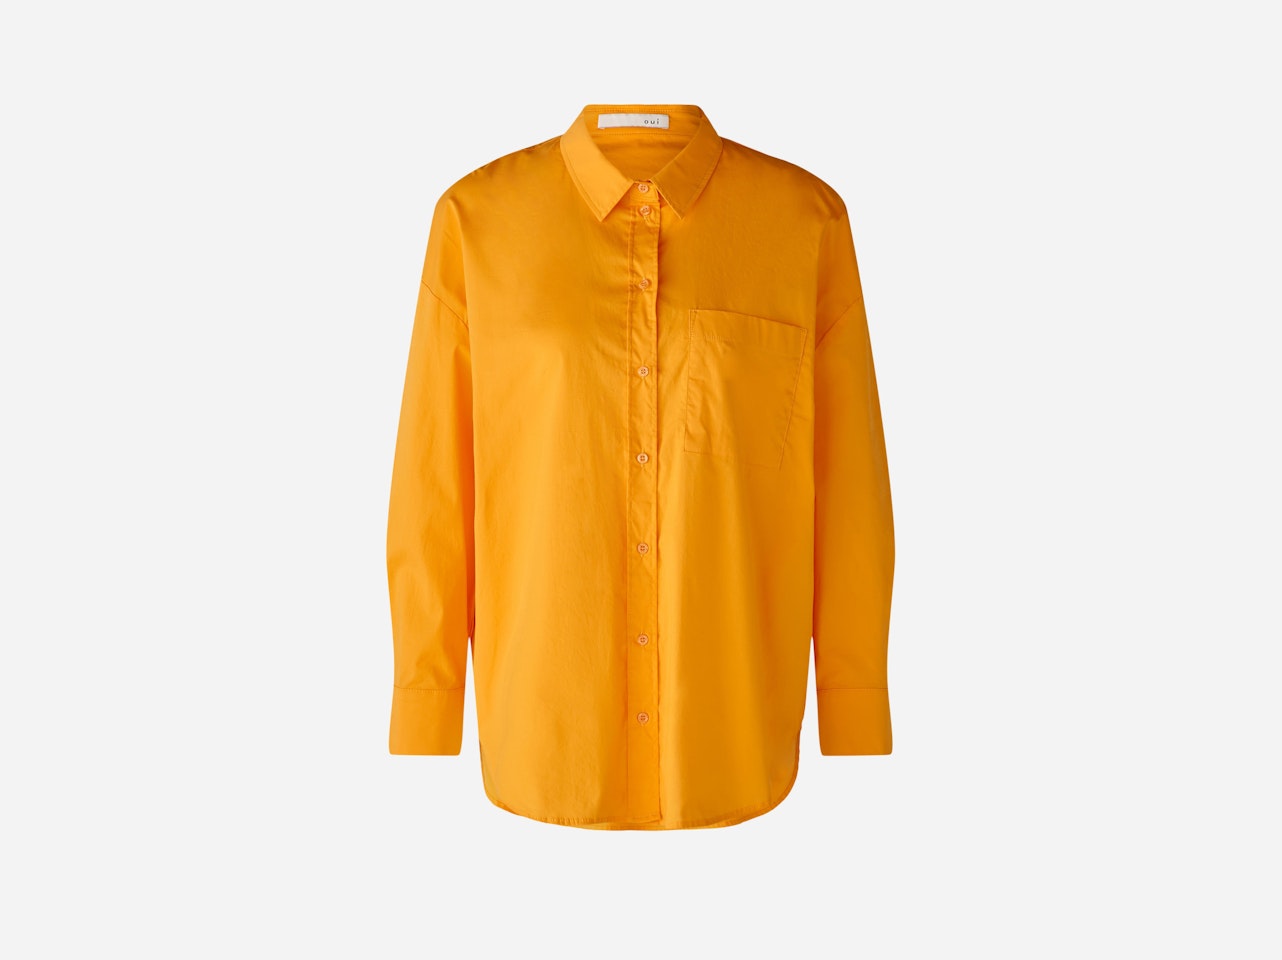 Bild 1 von Shirt blouse stretch cotton poplin in flame orange | Oui